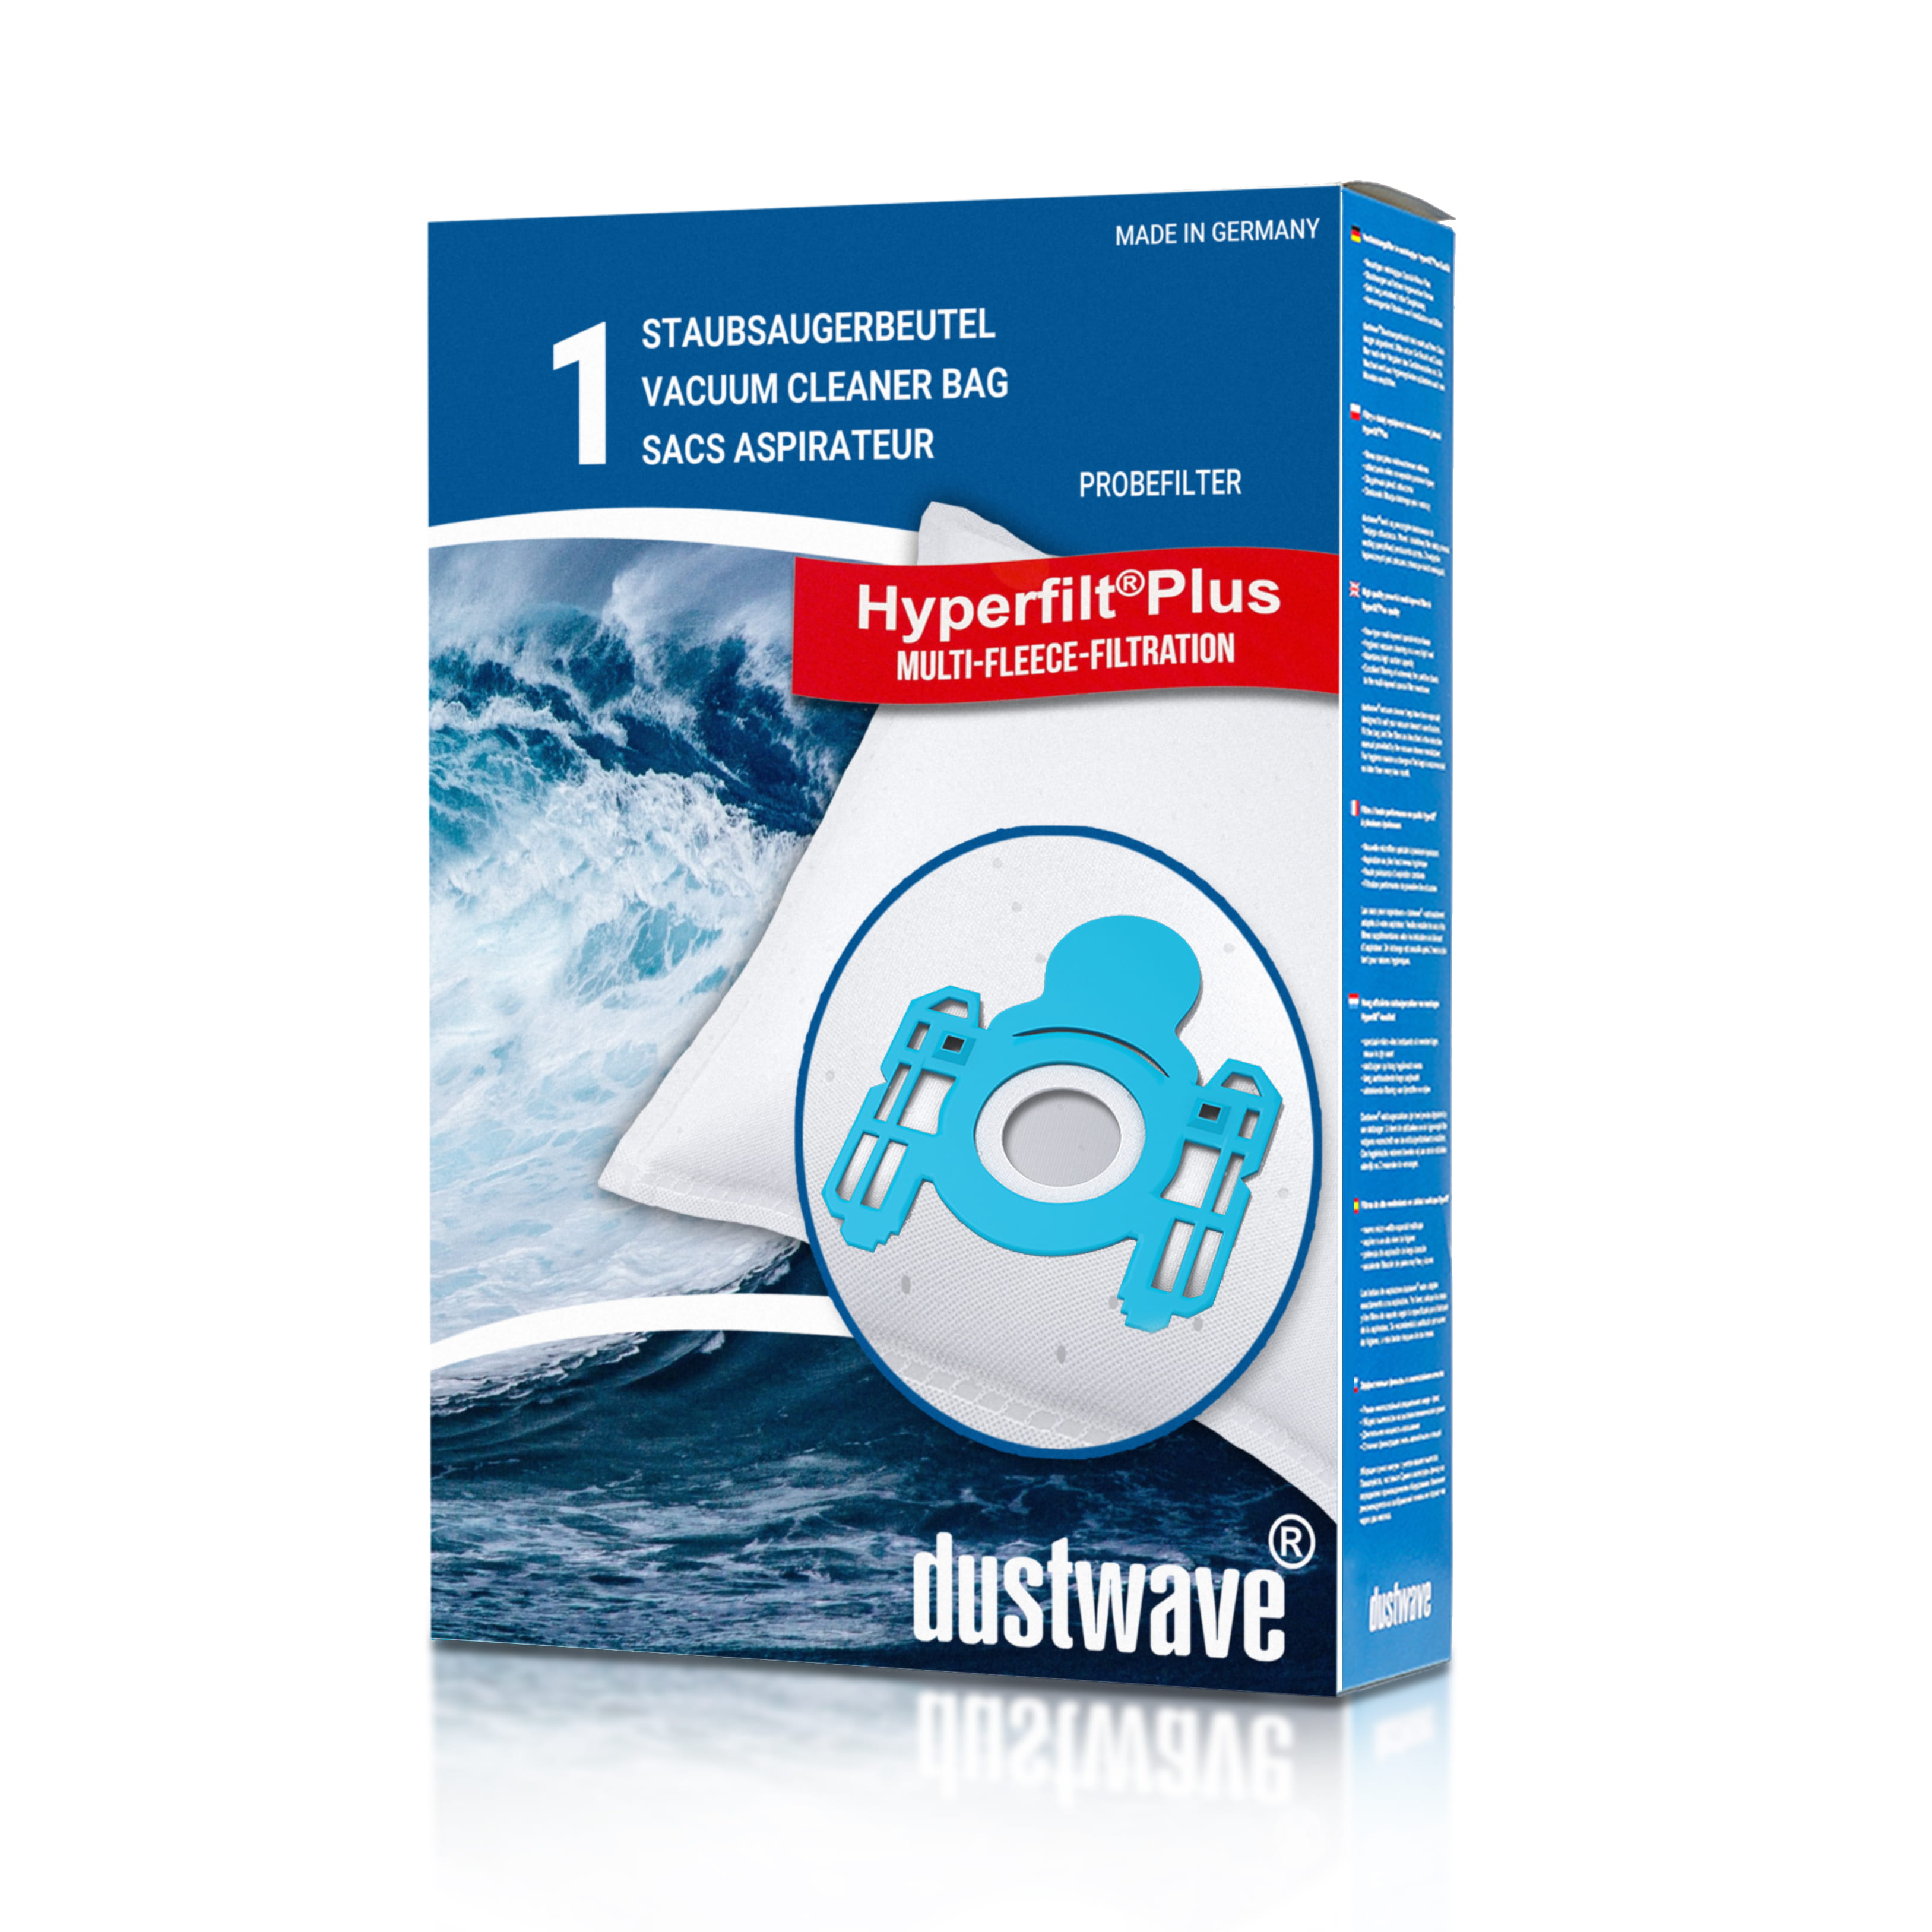 Dustwave® 1 Staubsaugerbeutel für AquaPur AE 700 - hocheffizient, mehrlagiges Mikrovlies mit Hygieneverschluss - Made in Germany